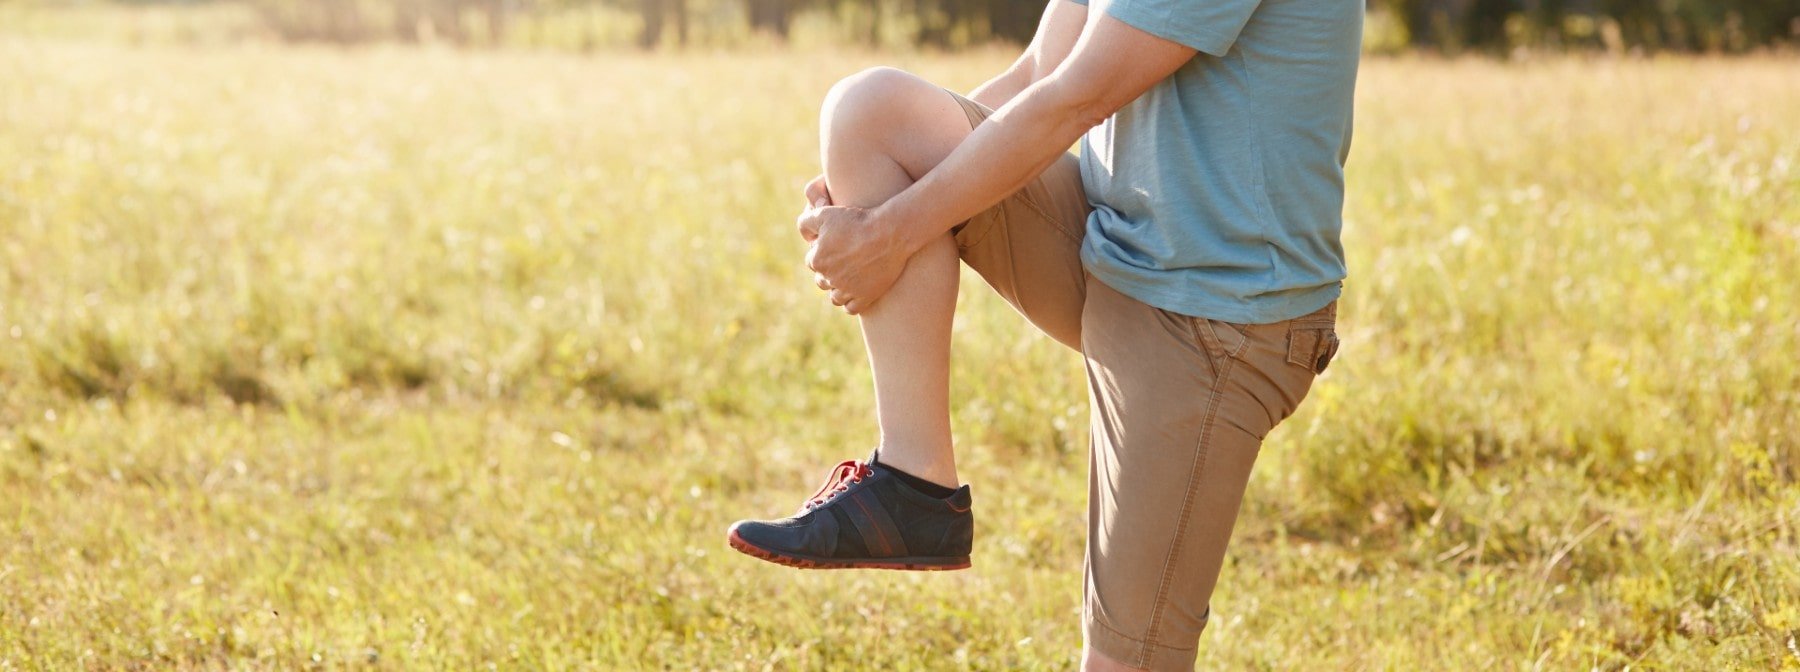 Das Stehen auf einem Bein kann die Gesundheit fördern – gemäß Studie